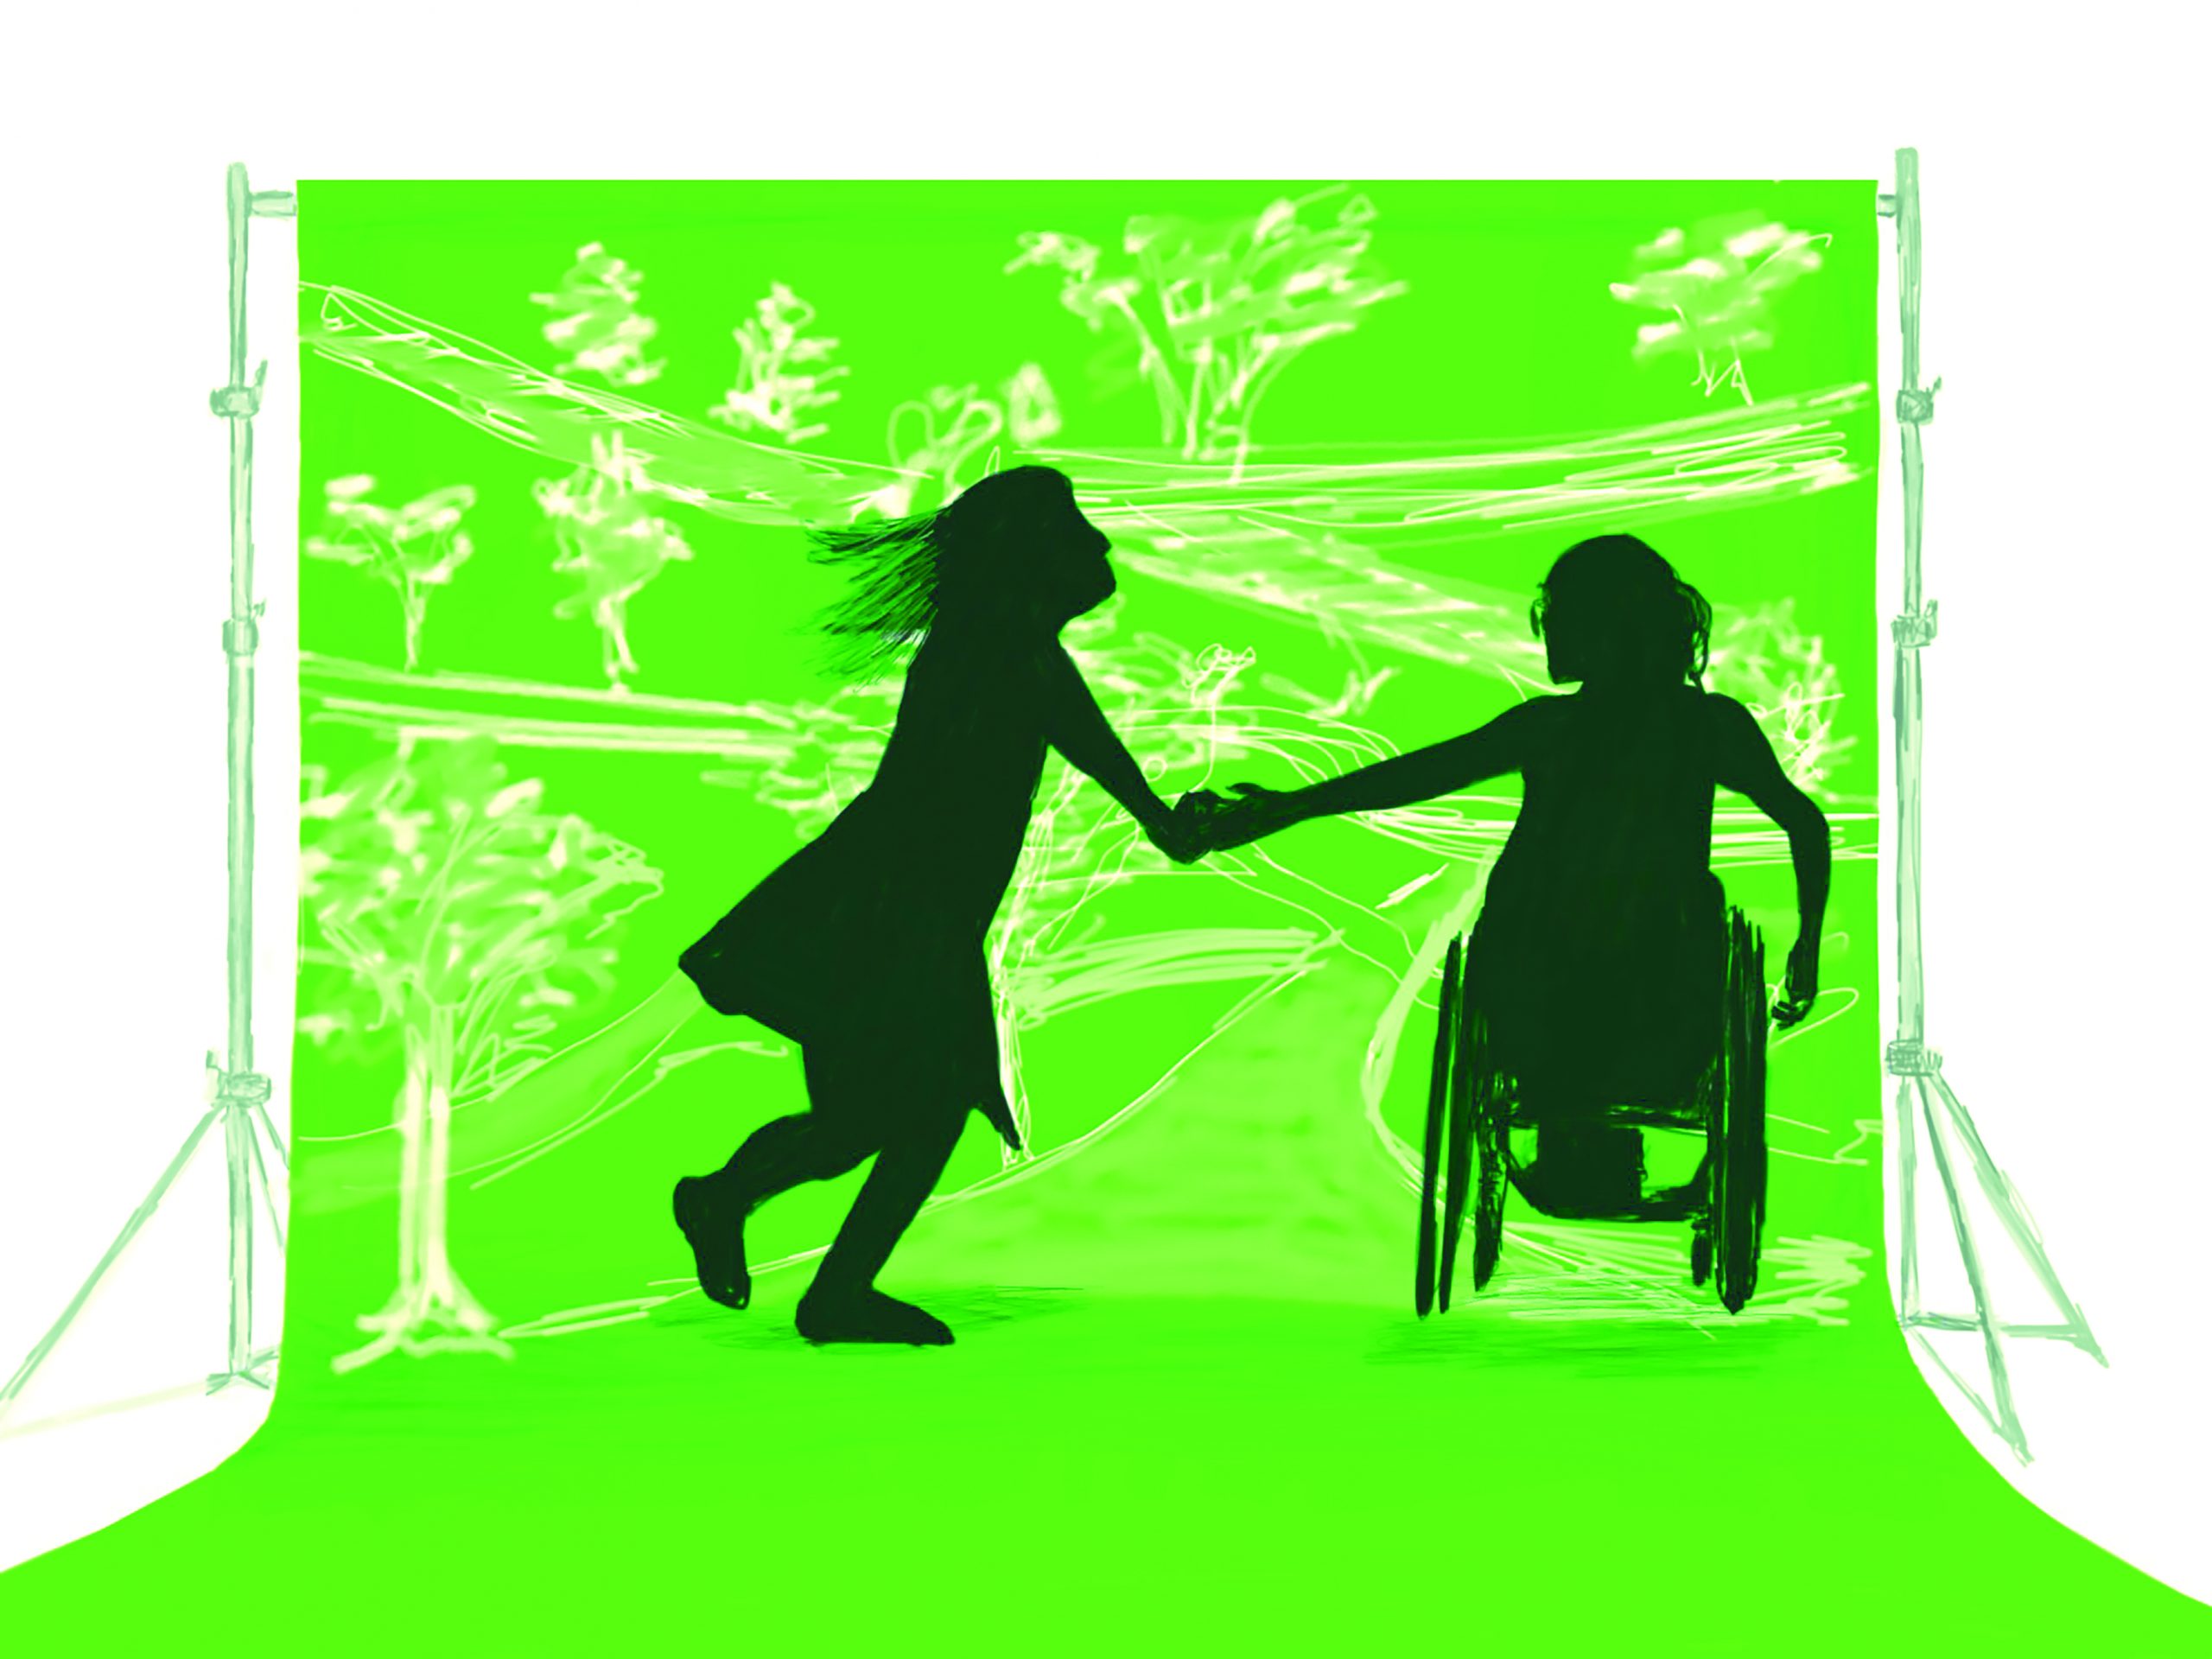 Zwei silhouetten von Menschen vor einem grünen Hintergrund. Die linke Silhouette springt leicht. Sie trägt ein Kleid. Die linke Silhouette sitzt in einem Rollstuhl. Beide Figuren halten sich an der Hand. Der Hintergrund zeigt skizzenhaft Bäume.